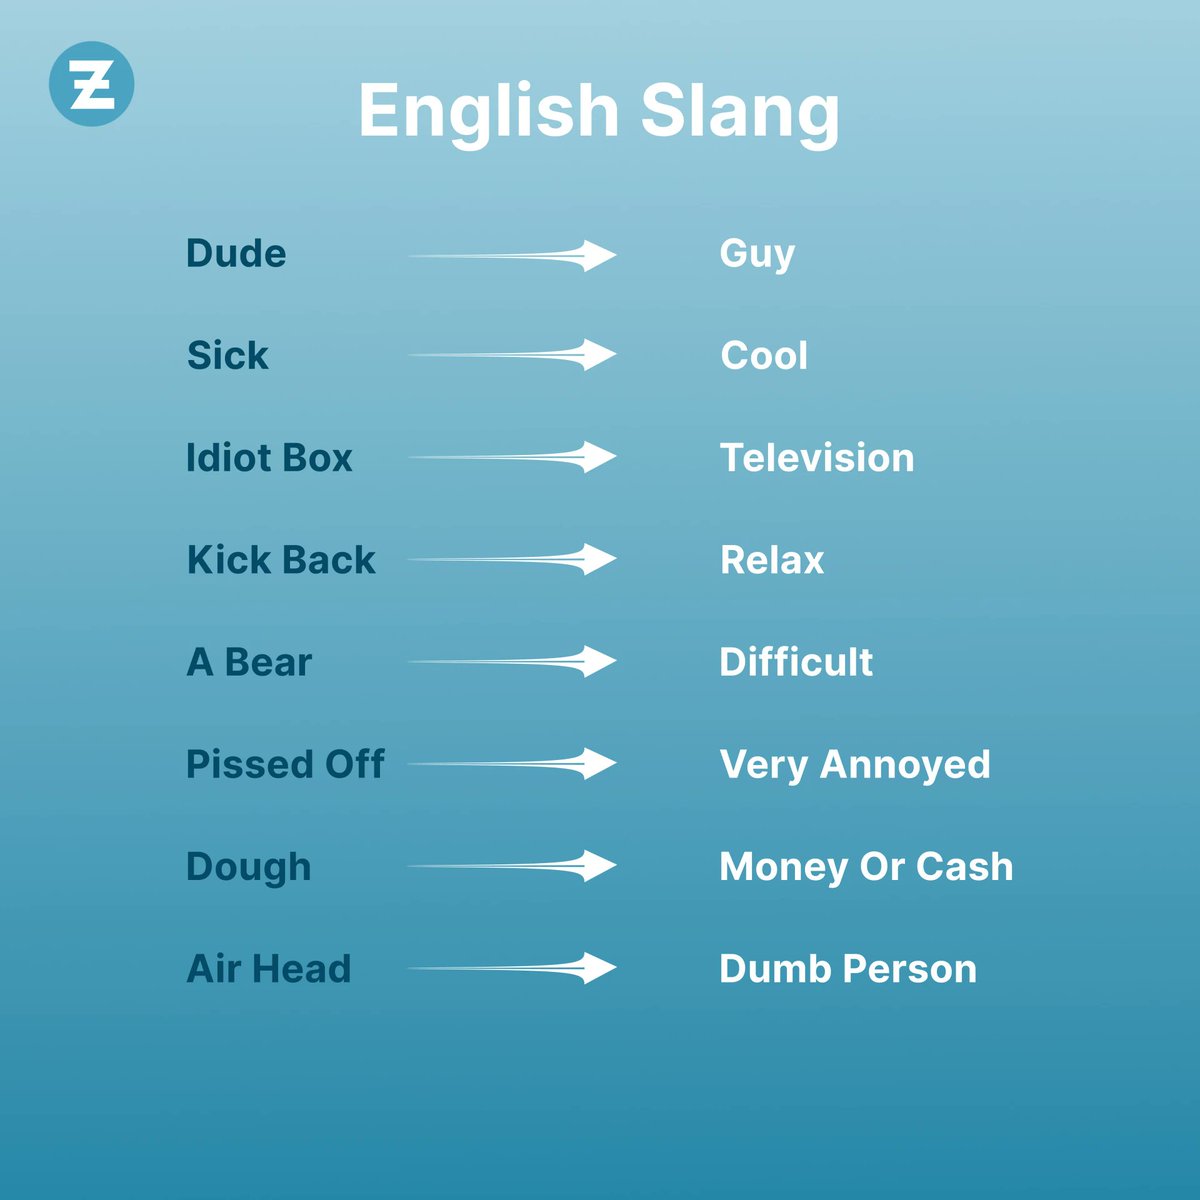 Learn English Slang Words...

#englishslang #slang #slangwords #slangidioms #englishslang #britishslang #idioms #vocabularybuilding #englishphrases #reelsenglishlearning #englishspeaking #englishlanguage #learnenglishonline #learnenglish #speakingenglish #dailyenglish #zoundslike